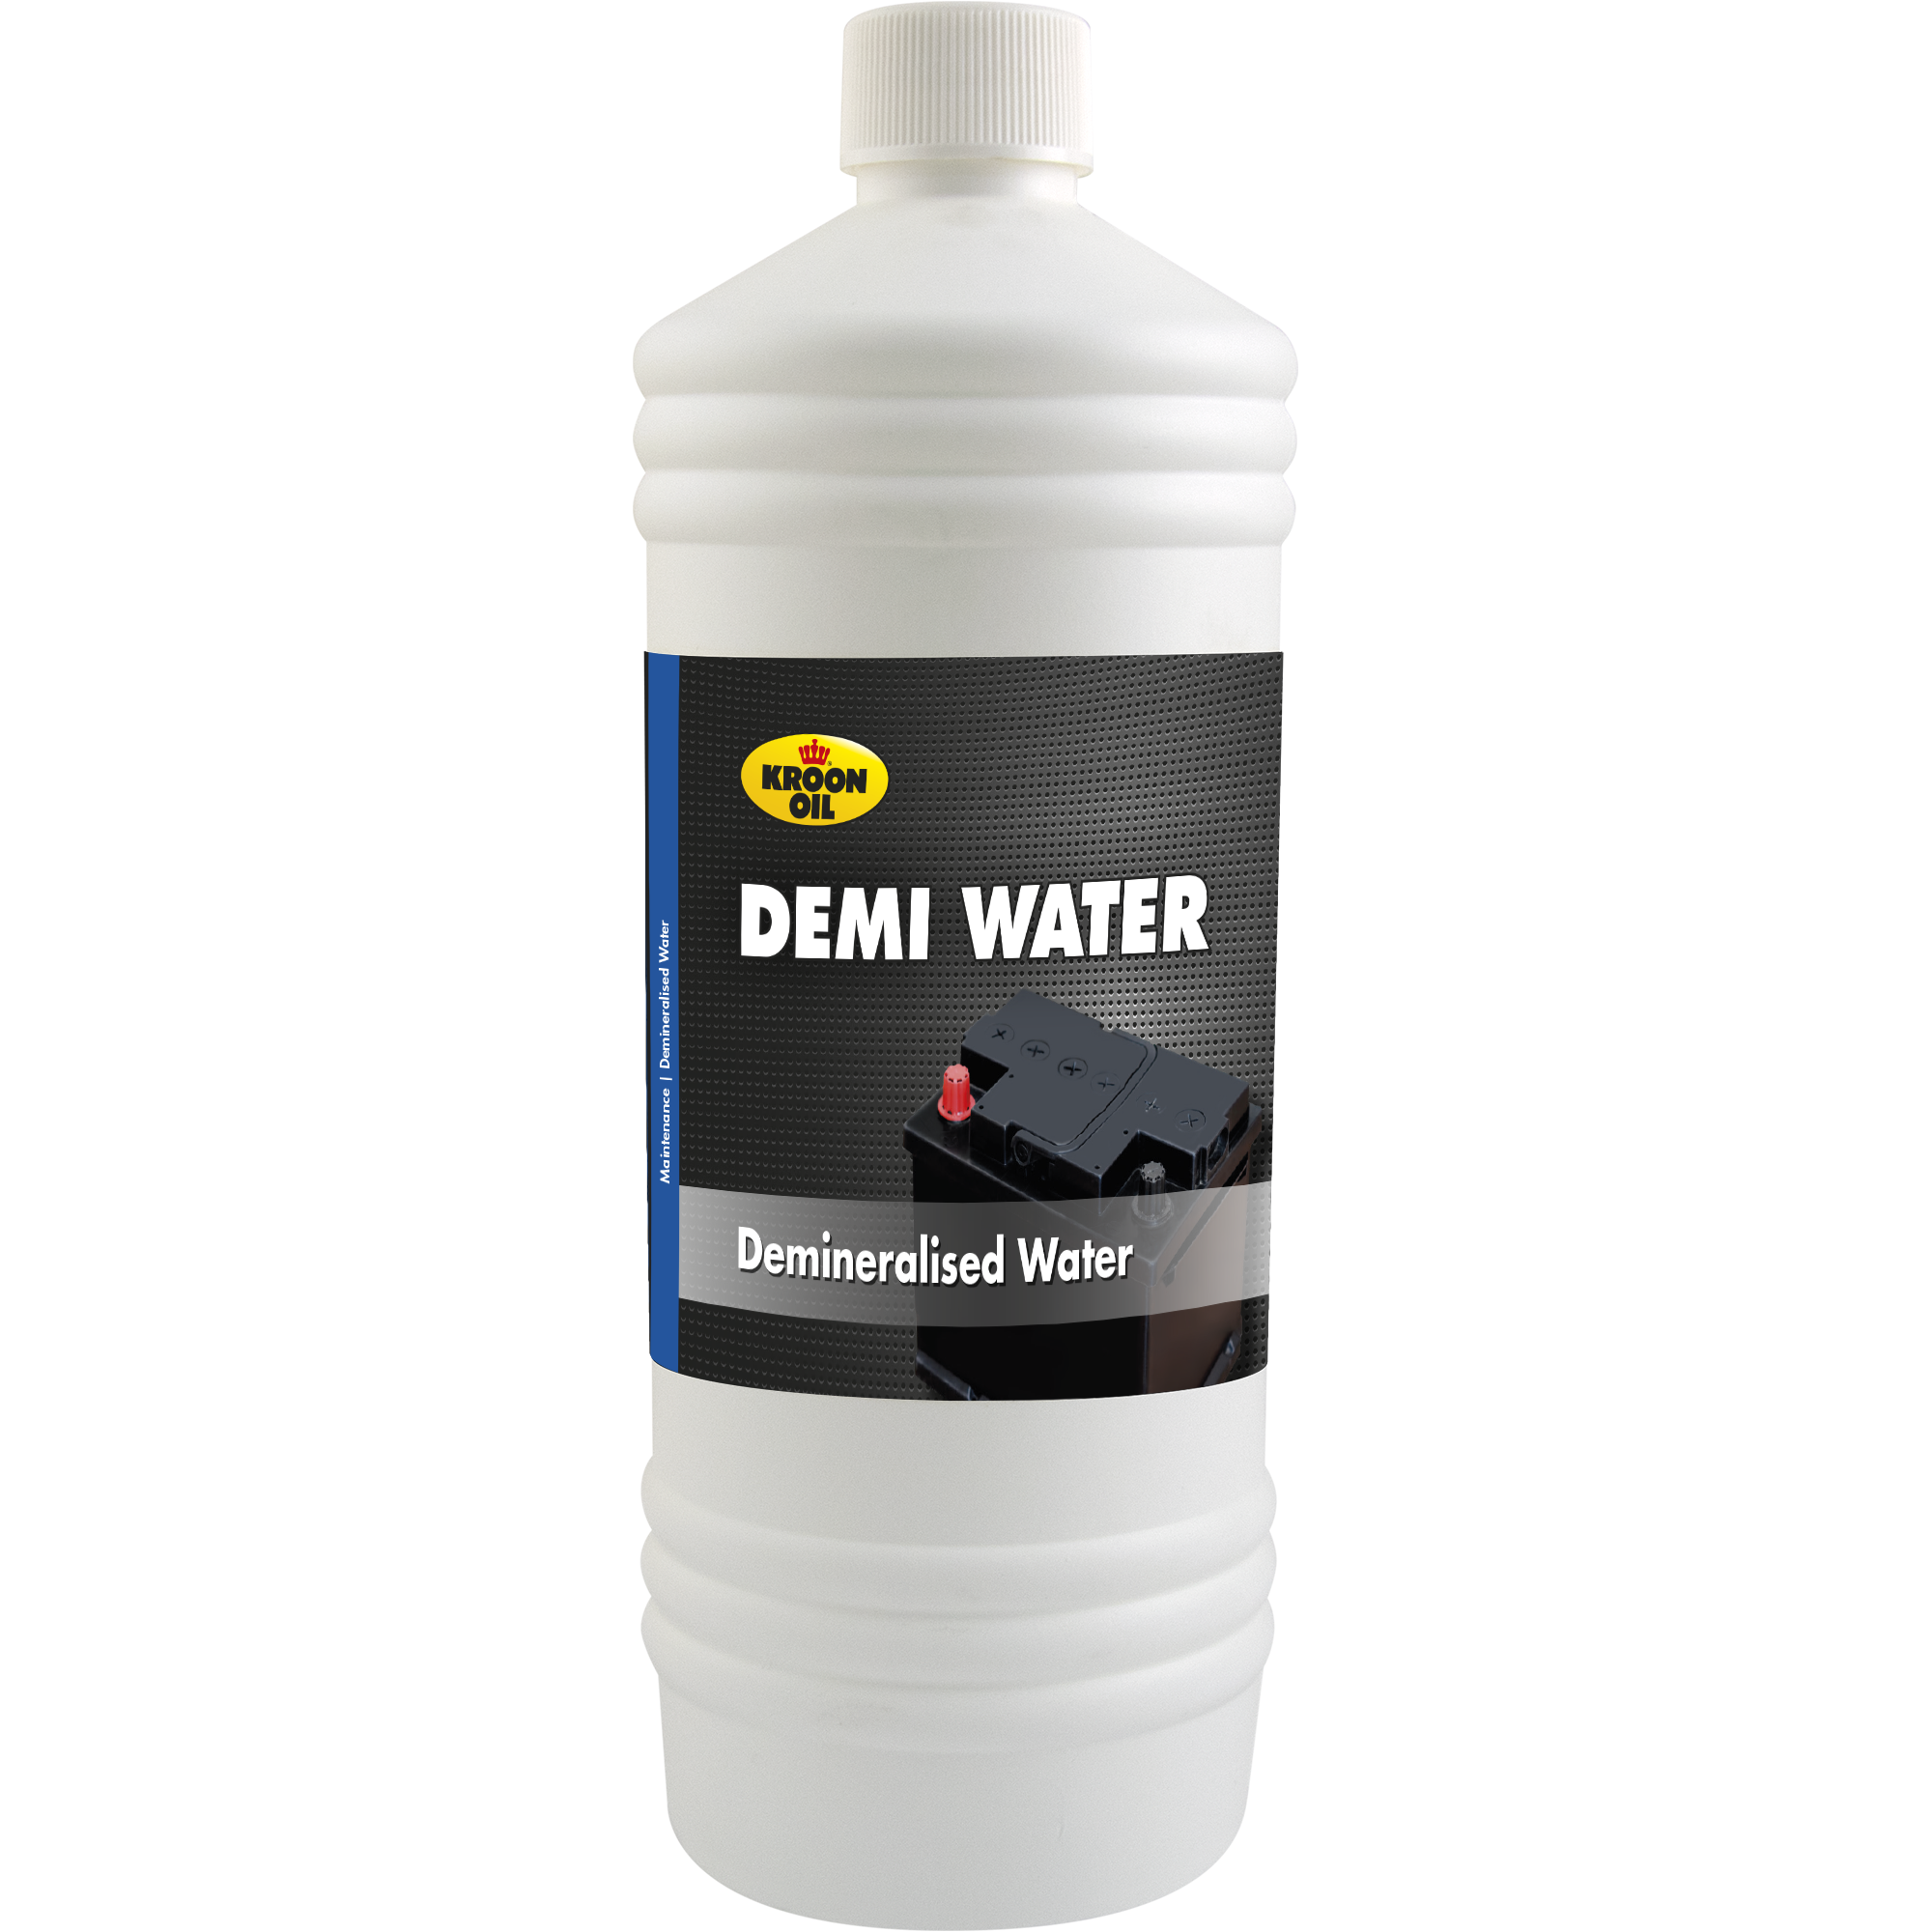 05201-1 Demi Water gedemineraliseerd water, is door zijn specifieke samenstelling volkomen vrij van alle minerale zouten, waaronder kalk, en chloor.